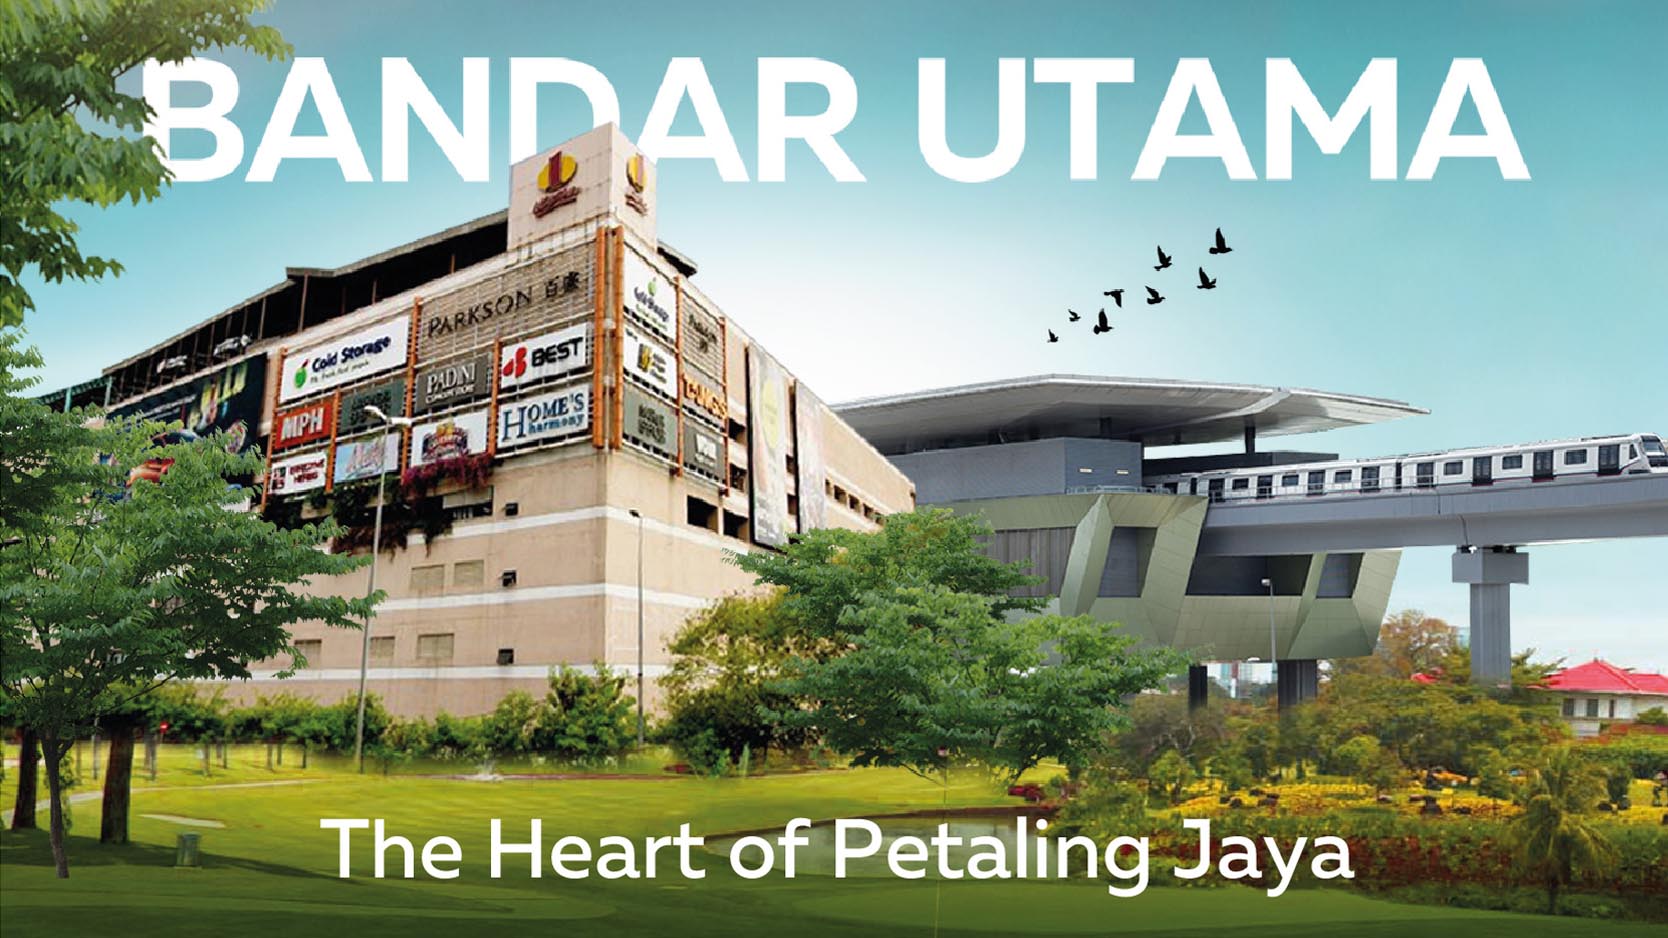 Bandar Utama, the heart of Petaling Jaya!